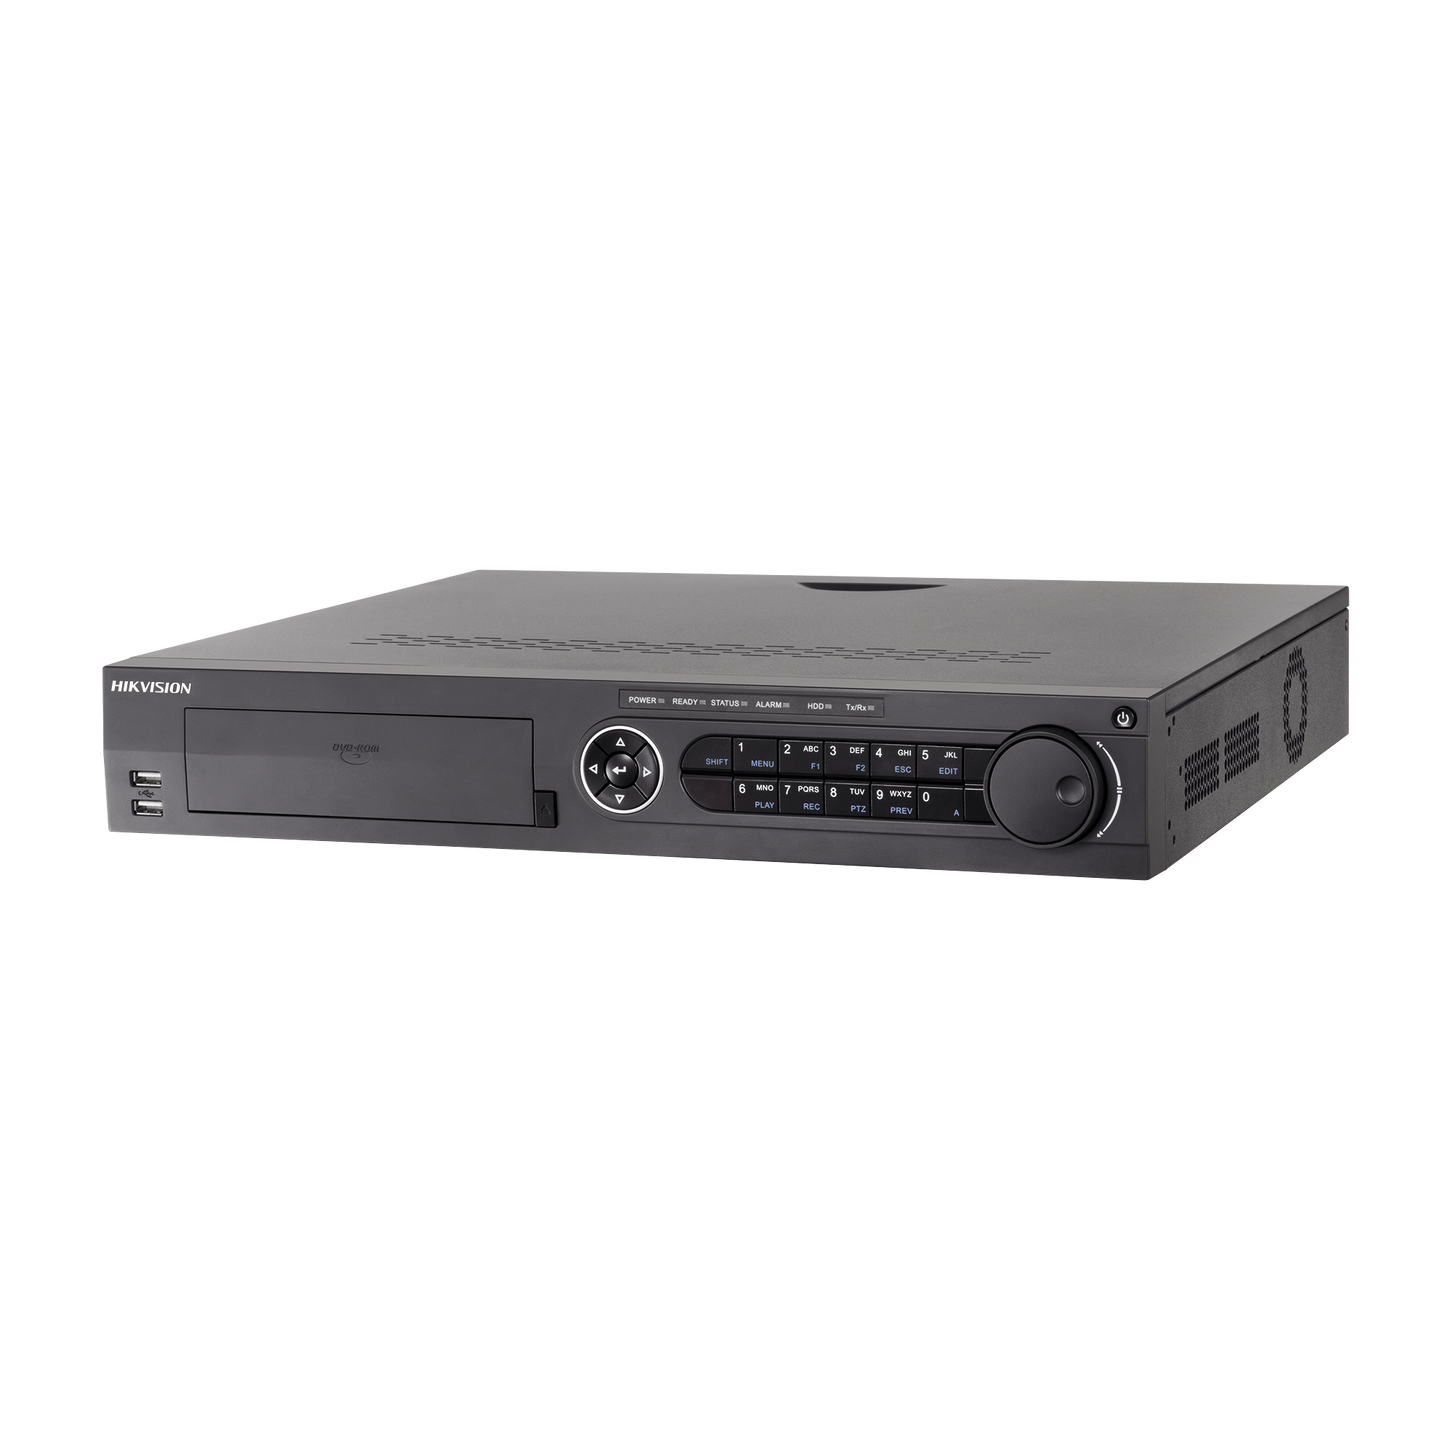 DVR 8 Megapixel (4K) / 16 Canales TURBOHD + 8 Canales IP / 4 Bahías de Disco Duro / 4 Canales de Audio / Videoanalisis / 16 Entradas de Alarma / POS / 2 Salidas HDMI